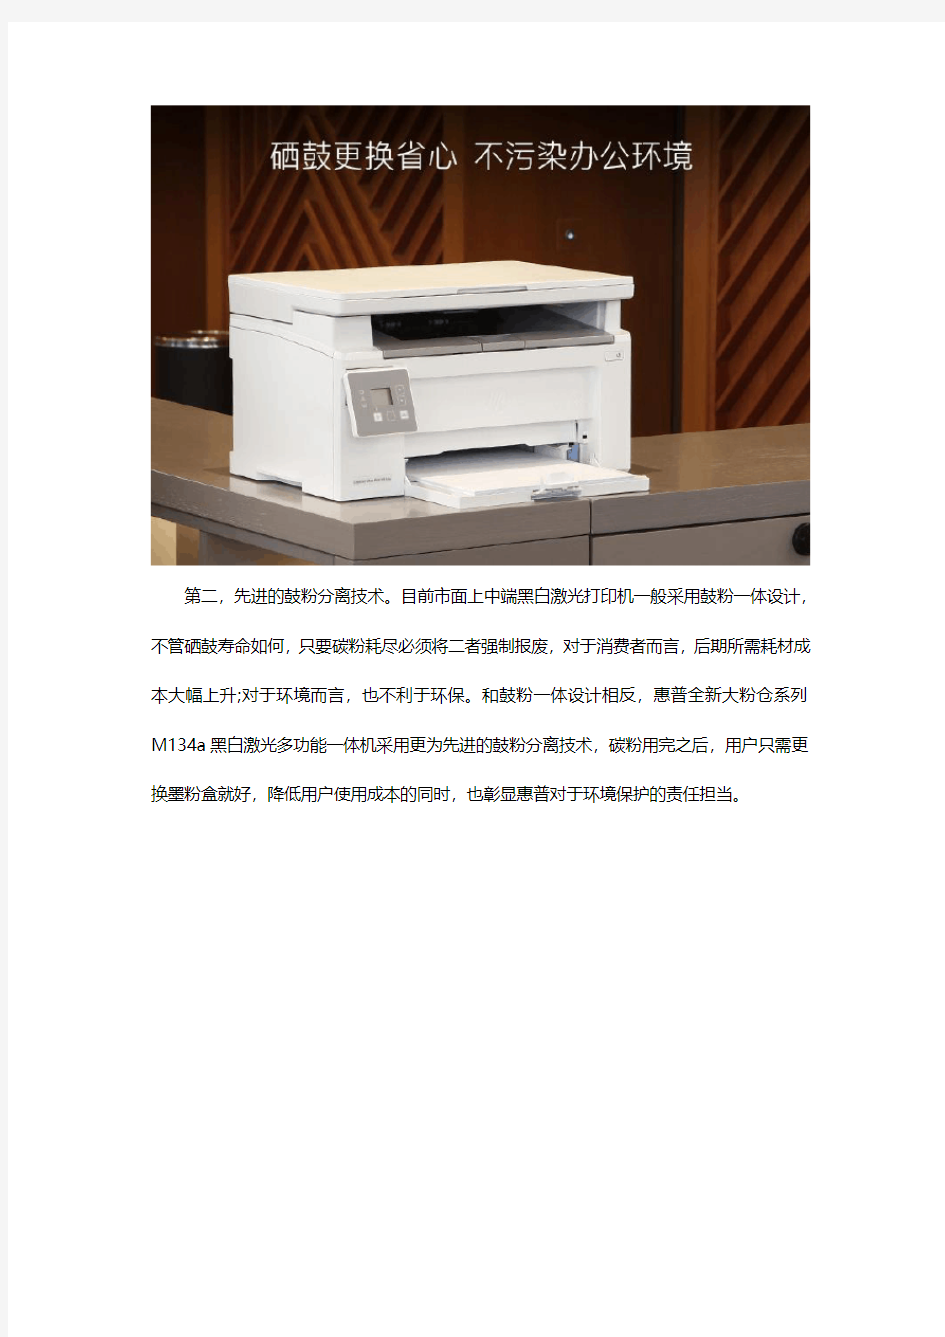 如何选购激光打印机,请推荐一款性价比高的,经费有限!